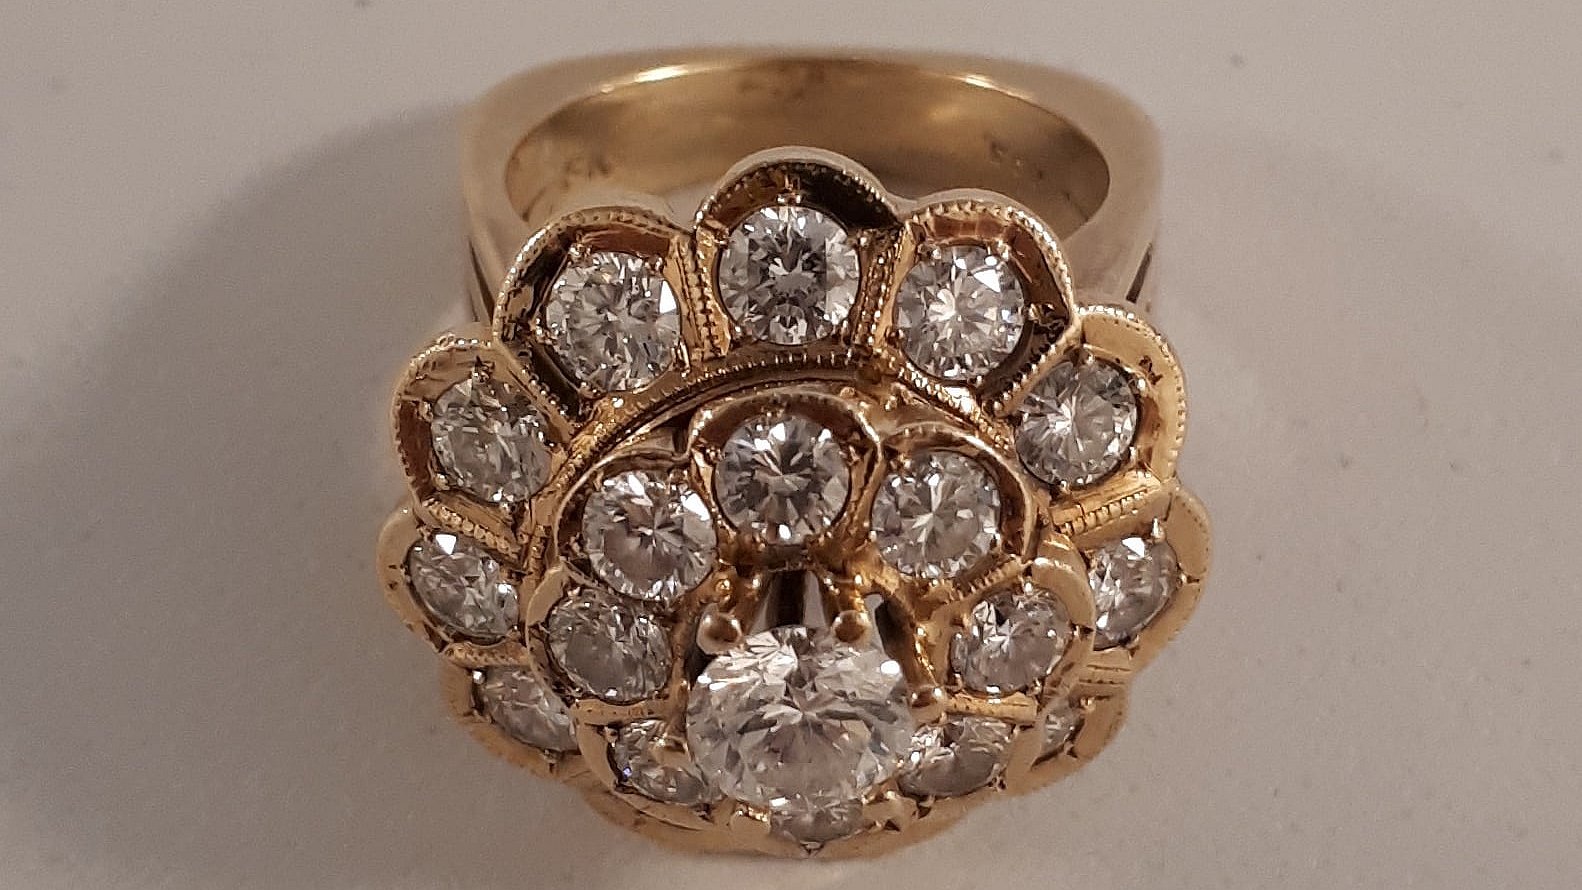 Politiet søger ejere stjålne smykker: Er det diamantring? | TV 2 Lorry